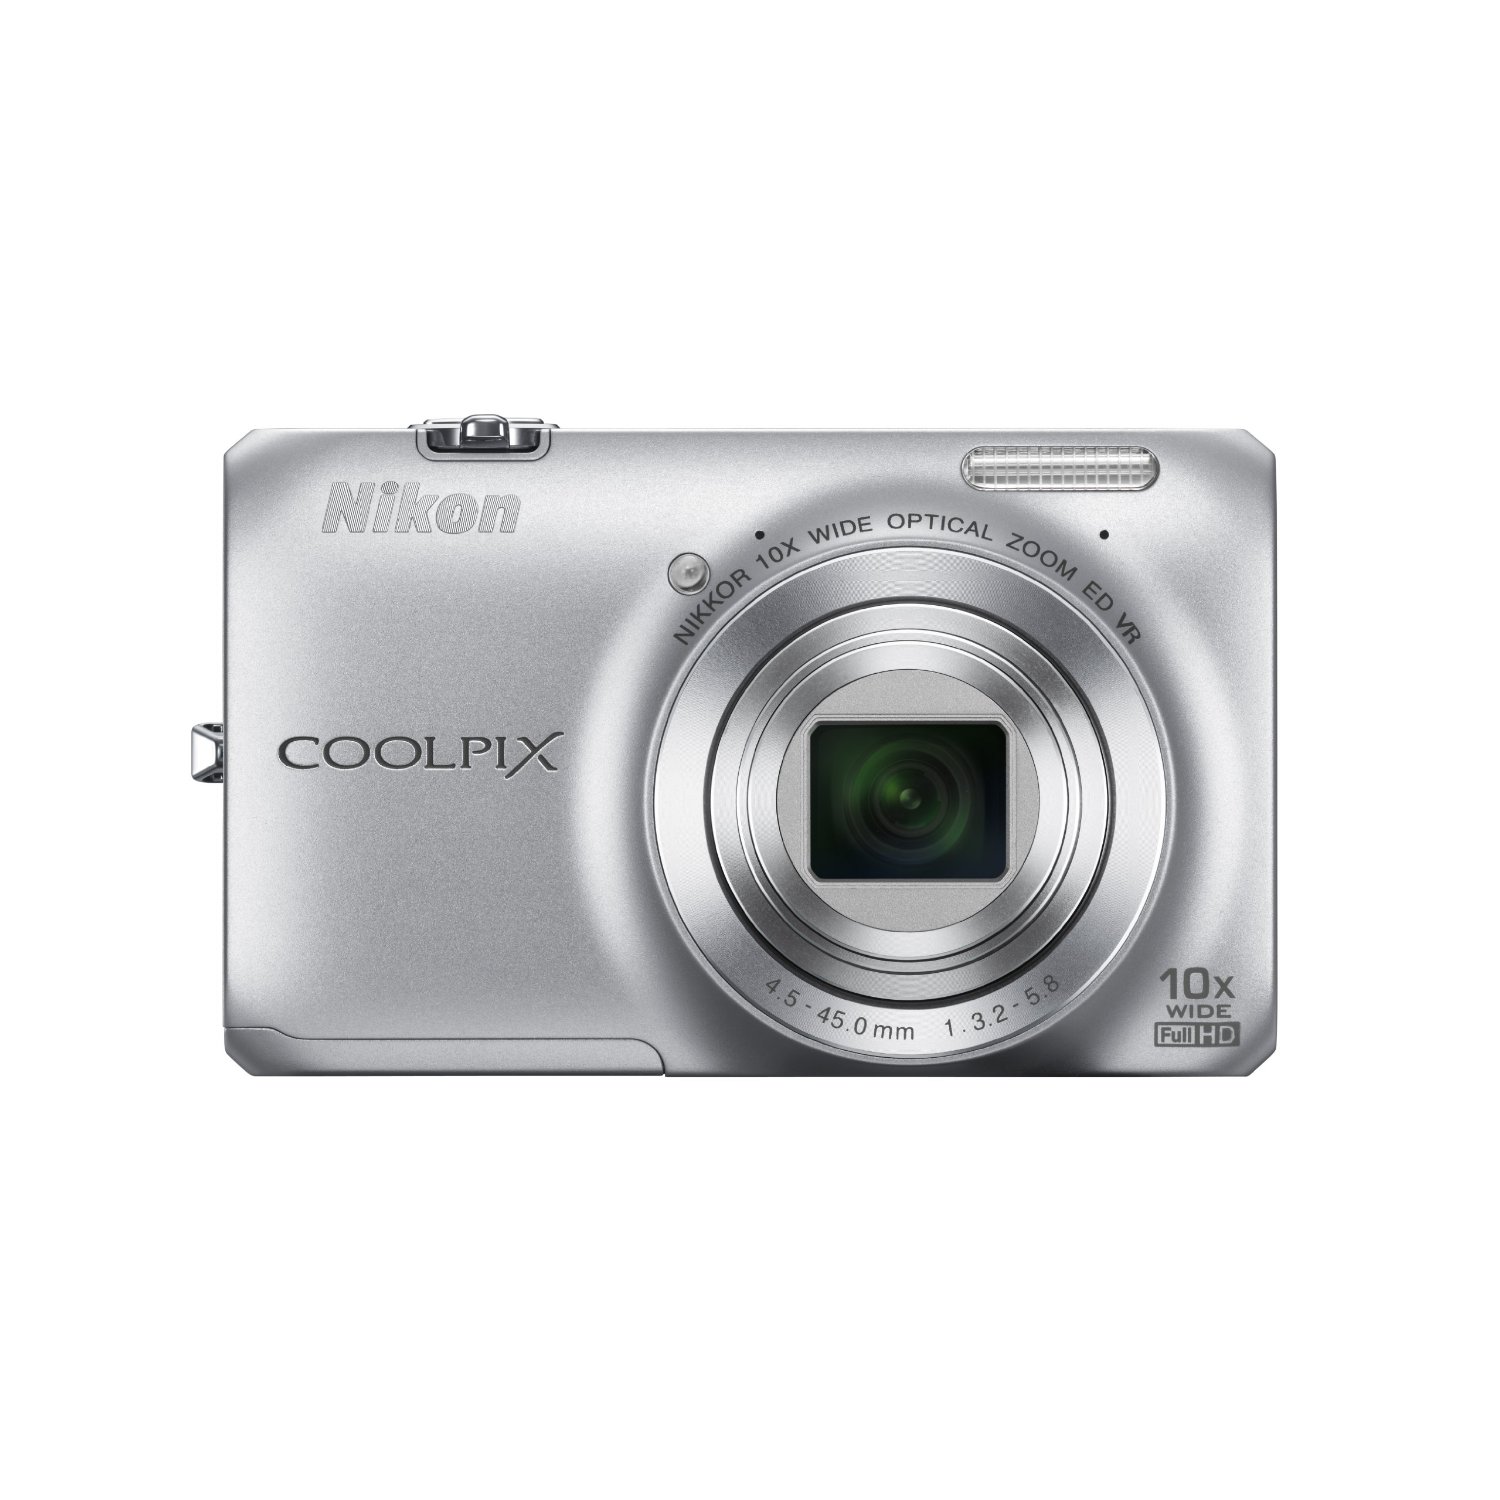 又降！尼康 Nikon Coolpix S6300 1600萬像素10倍光學變焦數碼相機 黑色款只要$109.95免運費